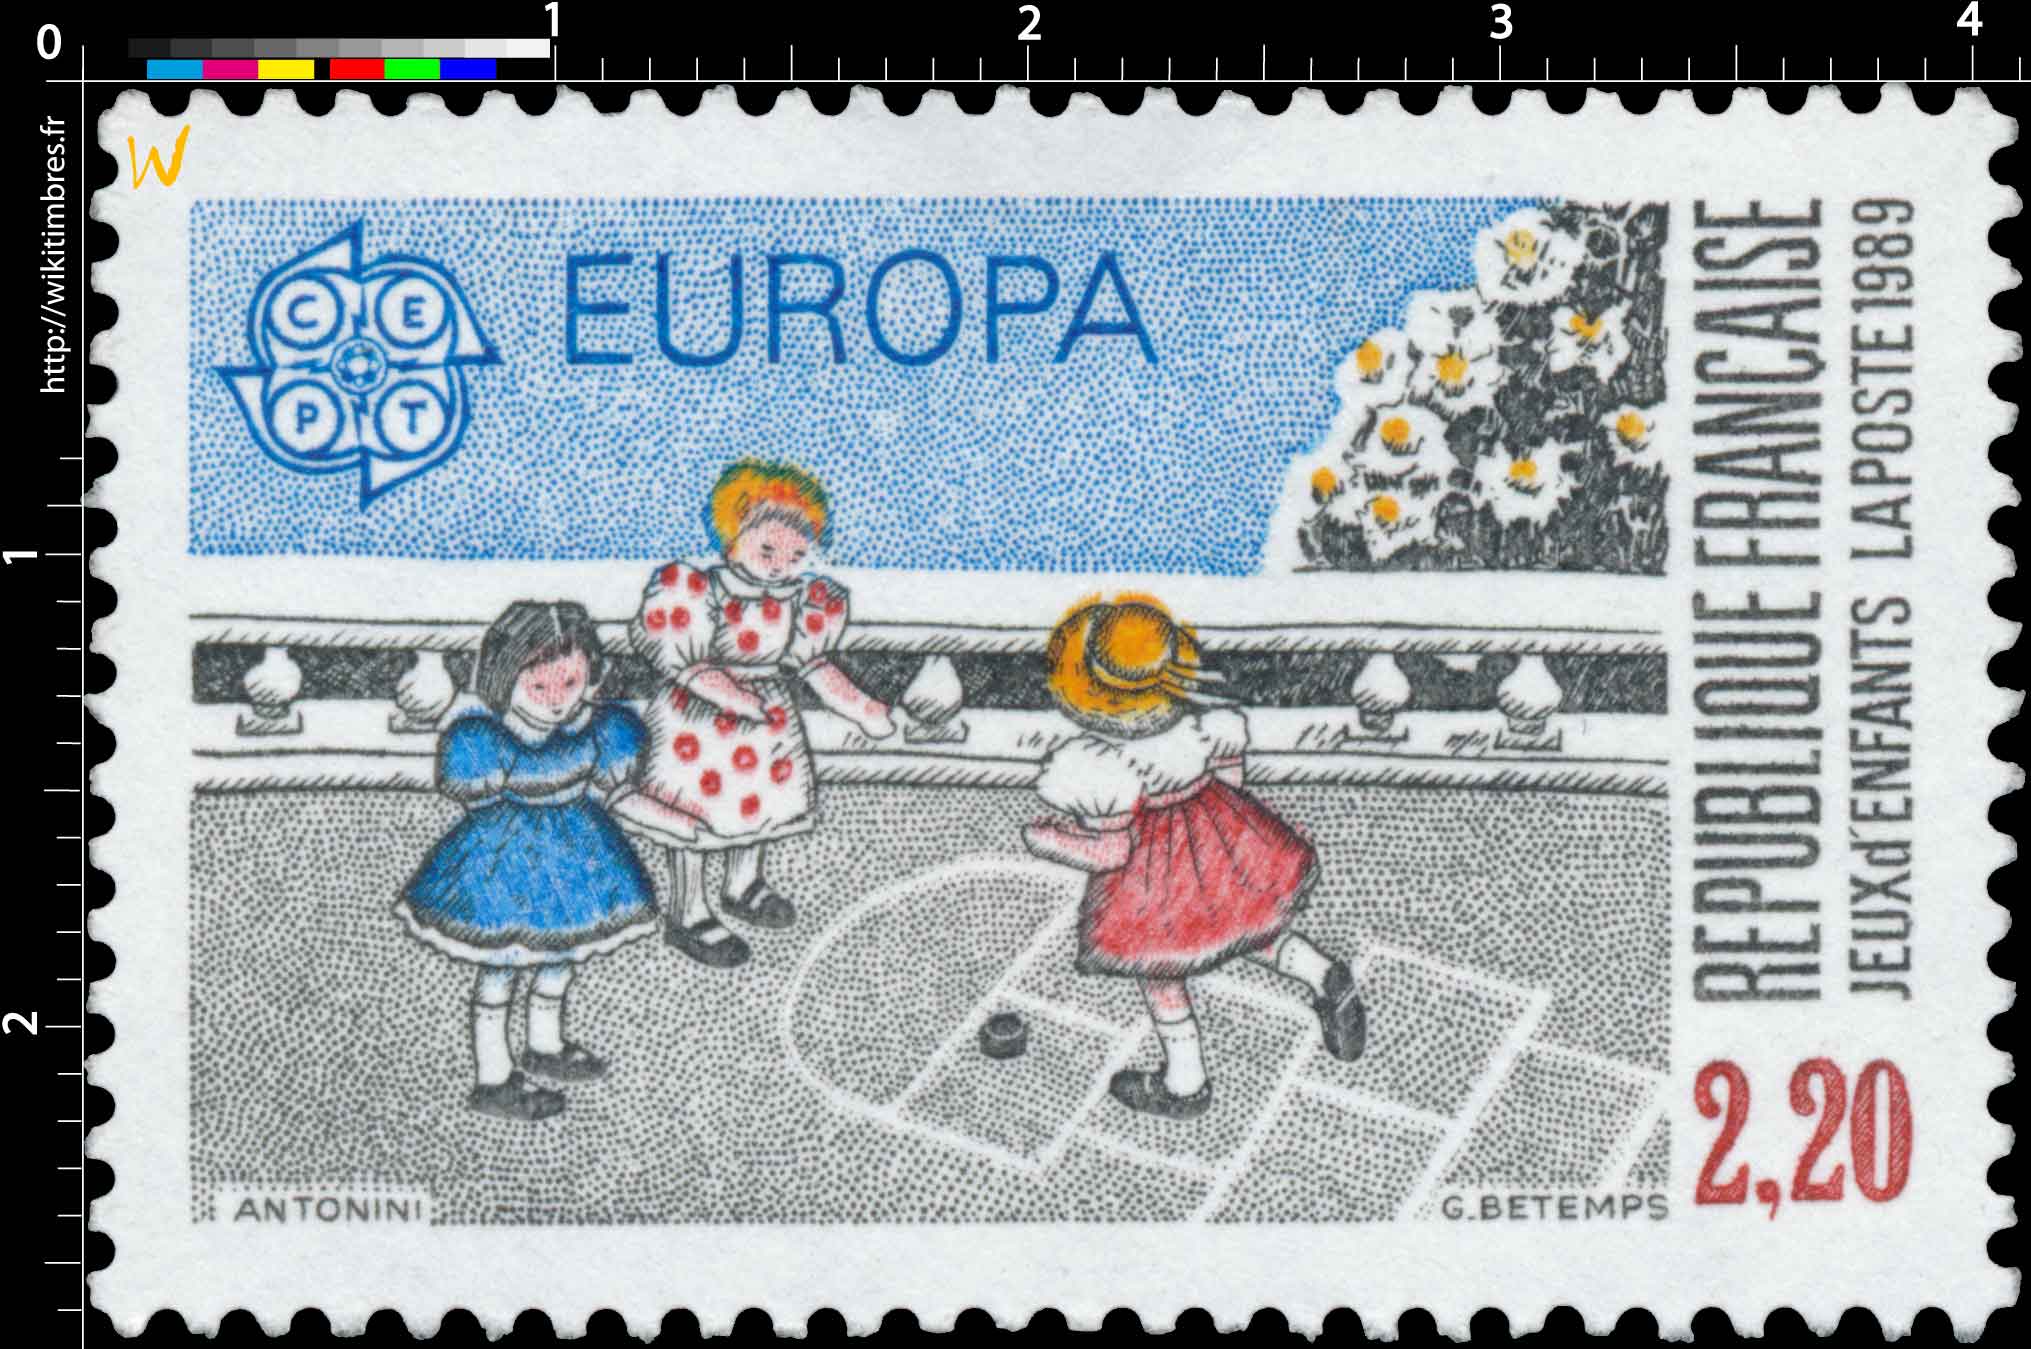 1989 EUROPA CEPT JEUX d'ENFANTS